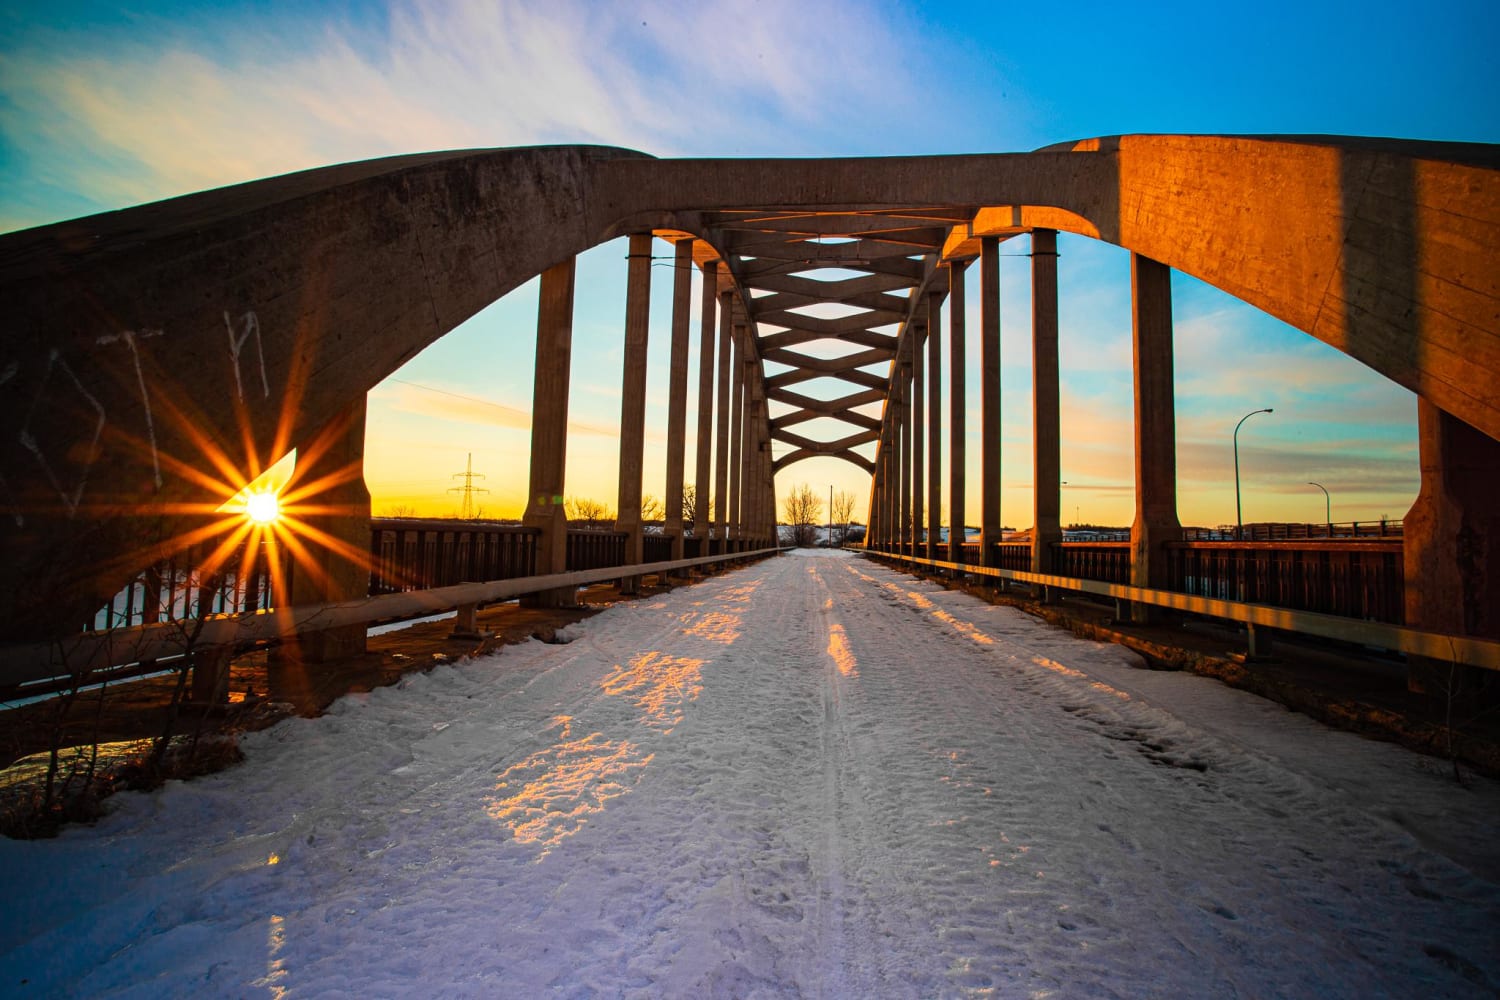 An abandoned bridge in Saskatchewan, Canada at sunset